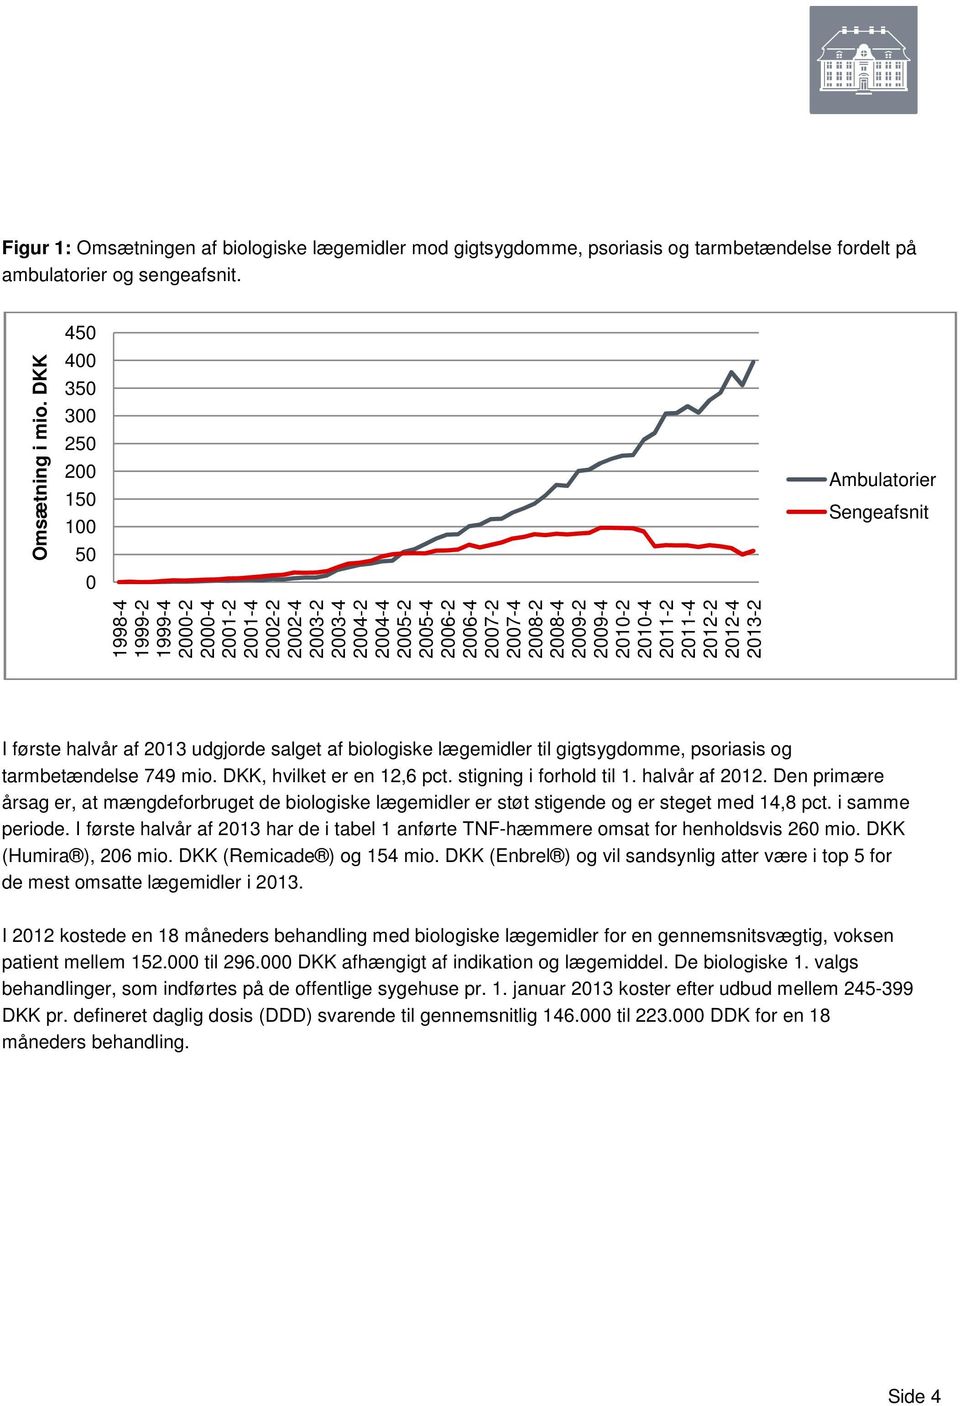 psoriasis og tarmbetændelse 79 mio. DKK, hvilket er en 1, pct. stigning i forhold til 1. halvår af 1.